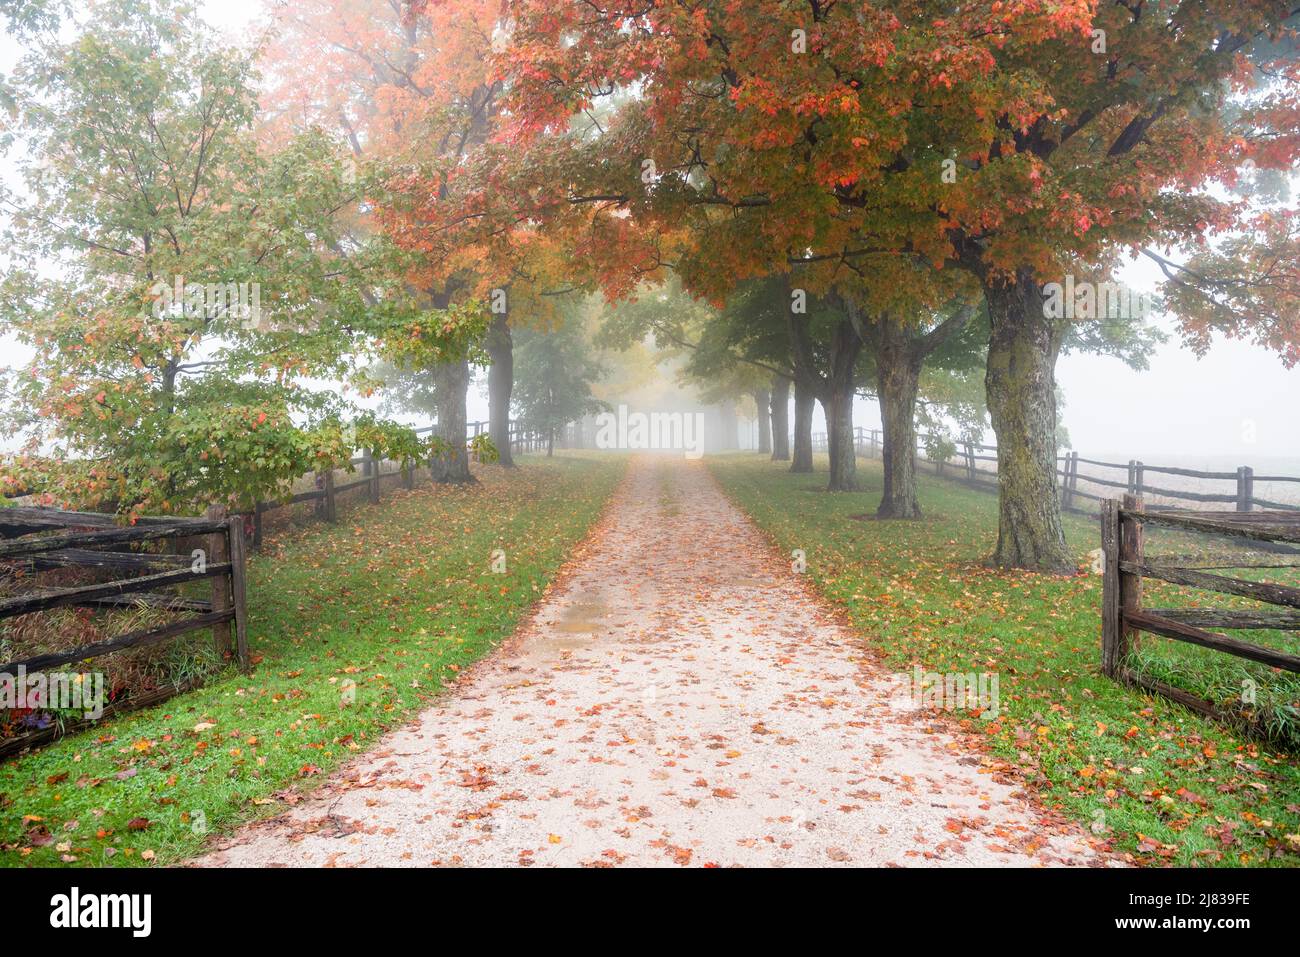 Schmale, von Bäumen gesäumte Landstraße, die an einem kalten Herbstmorgen von Nebel umhüllt ist. Herbstfarben. Stockfoto